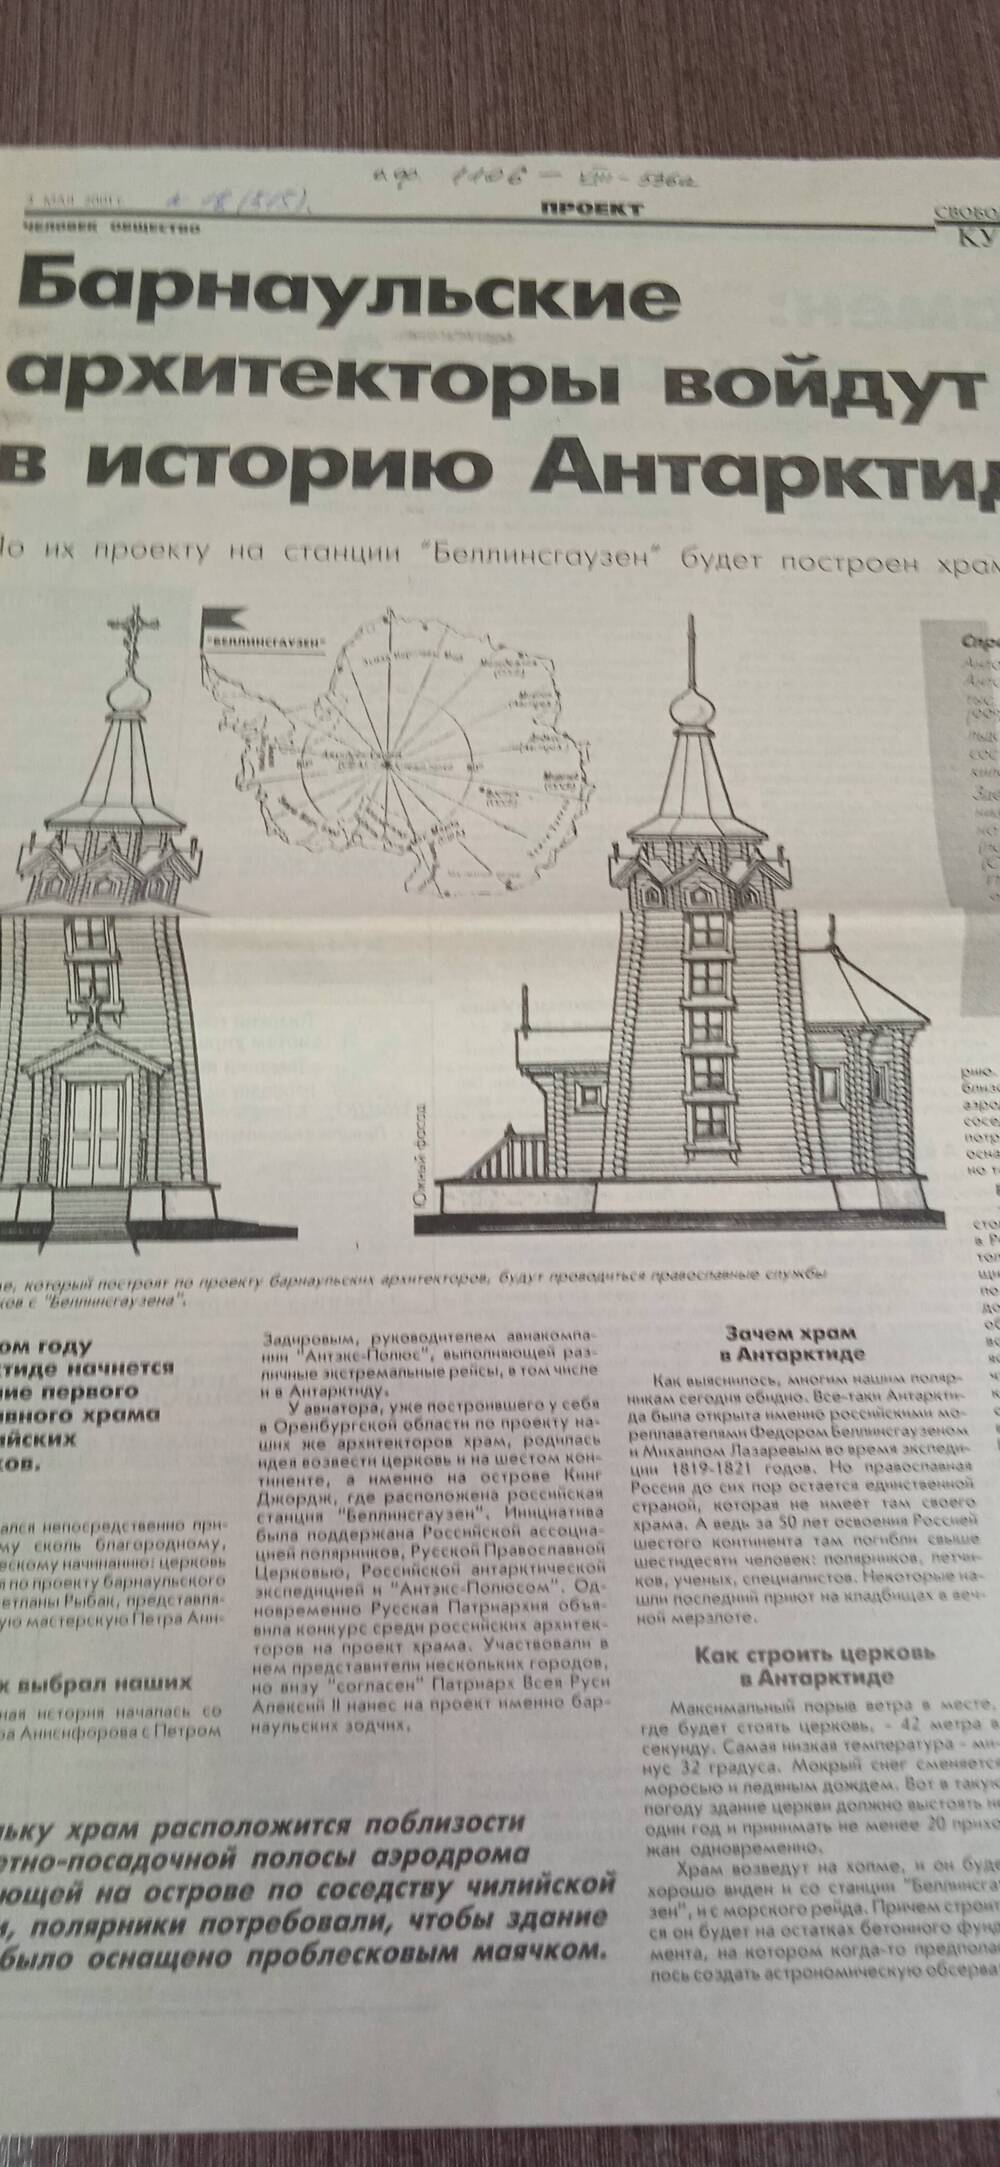 Газета. Свободный курс №18 (515).
Барнаульские архитекторы войдут в историю Антарктиды.